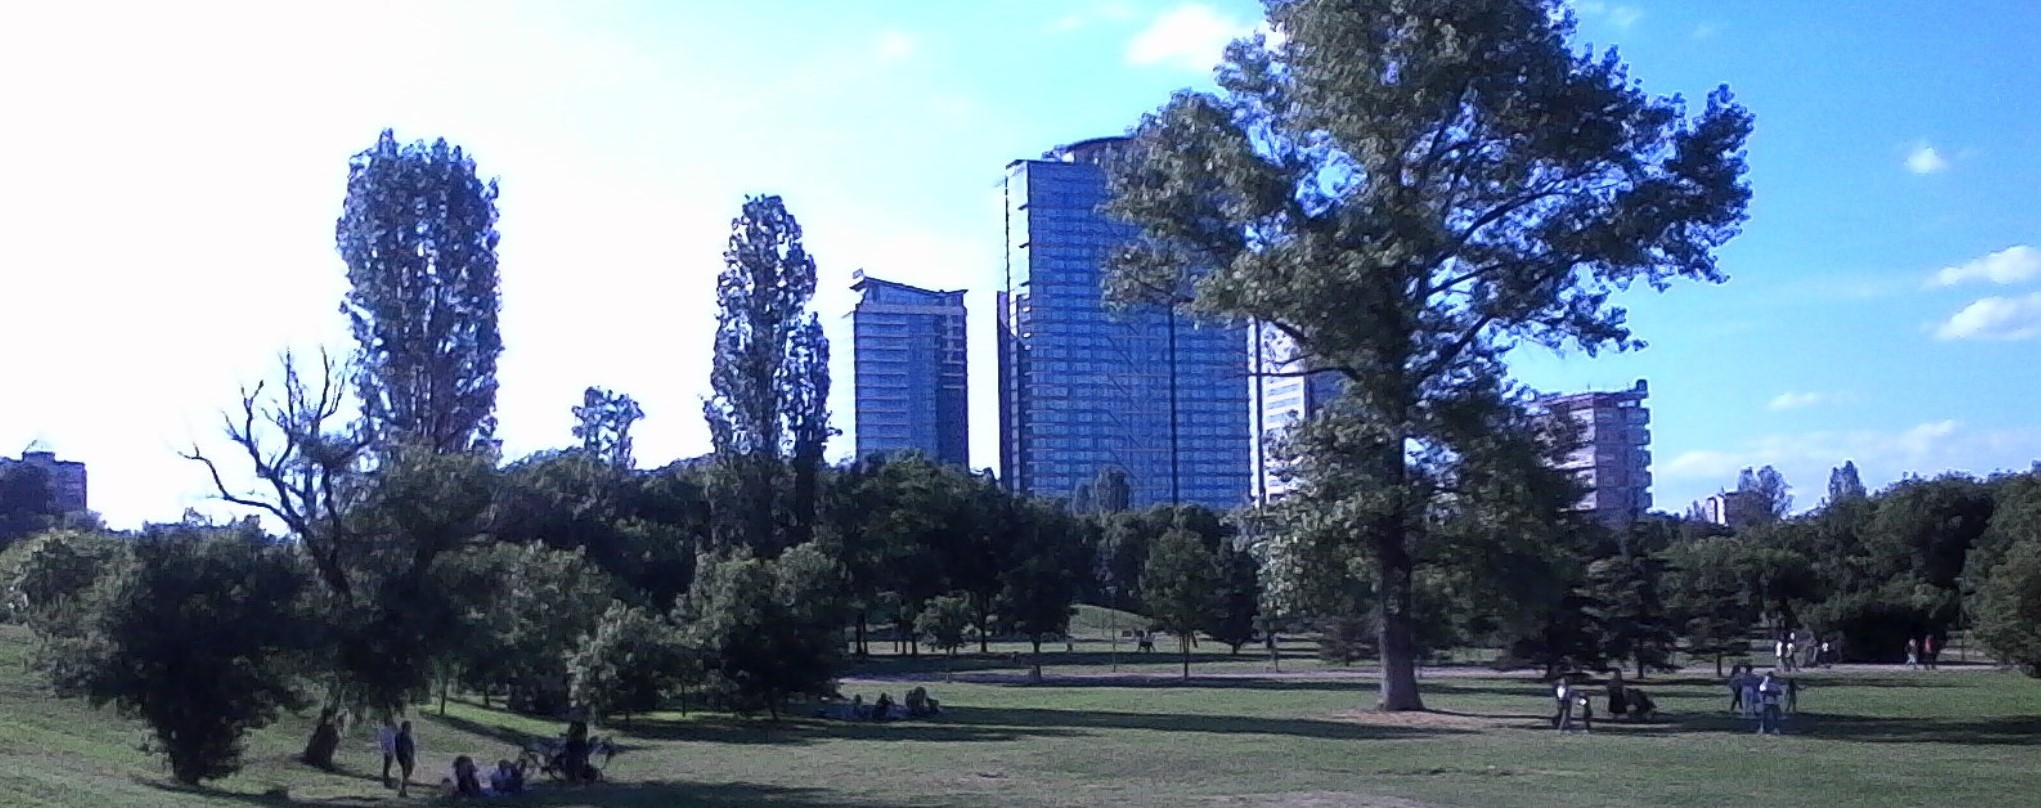 Sofia park